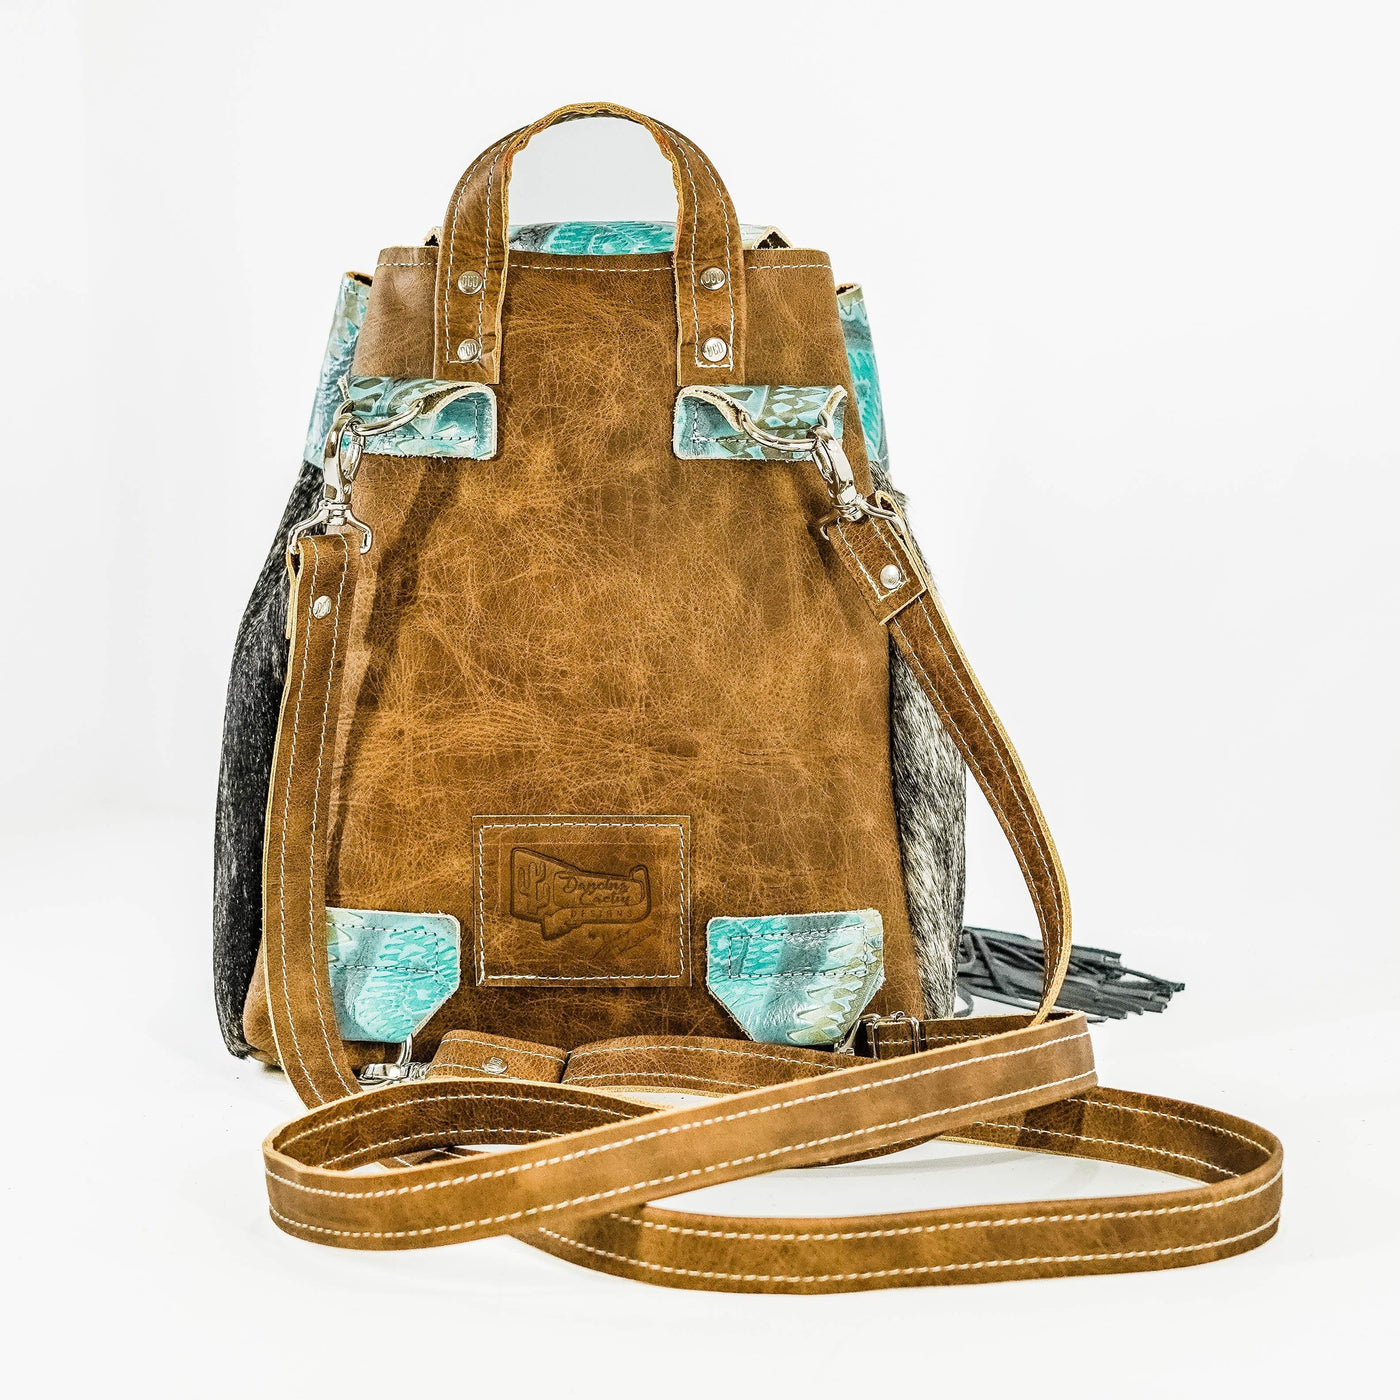 Mini Kelsea Backpack - Brindle w/ Canyon Aztec-Mini Kelsea Backpack-Western-Cowhide-Bags-Handmade-Products-Gifts-Dancing Cactus Designs